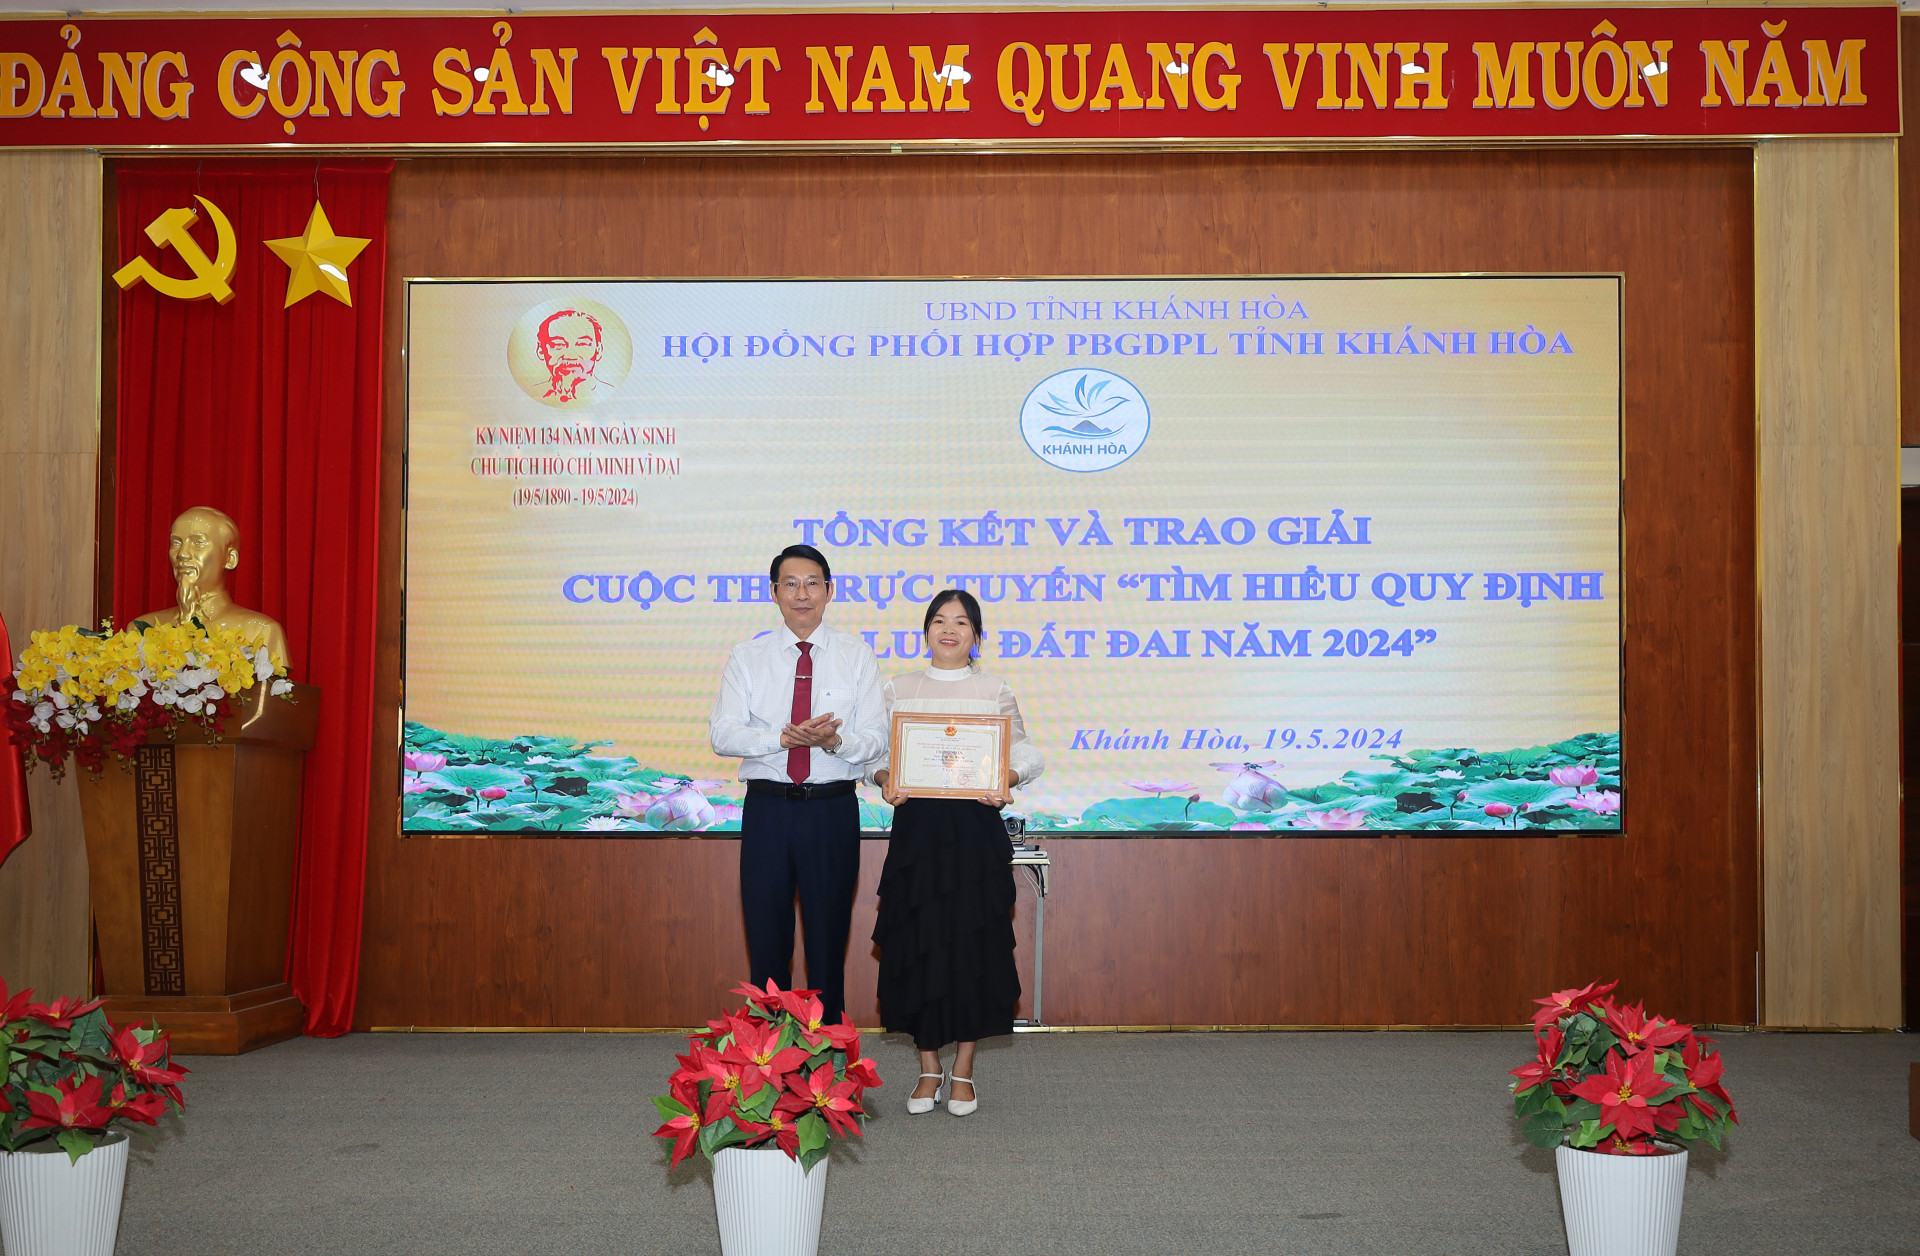 Đồng chí Đinh Văn Thiệu trao giải nhất cá nhân cho thí sinh Trần Thị Hương.